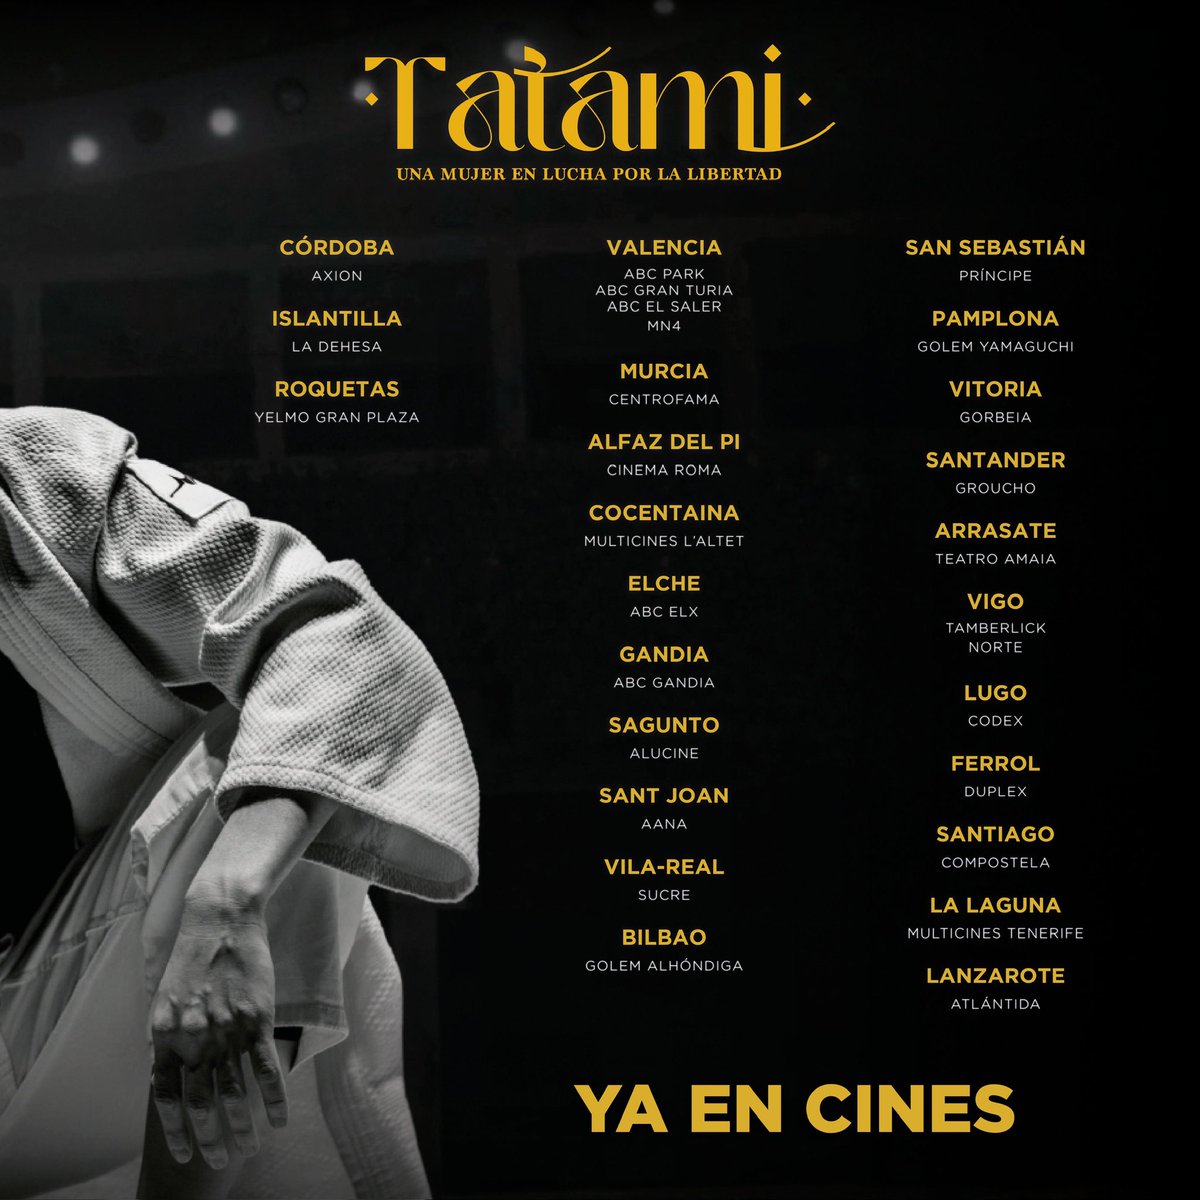 ¡MAÑANA EN CINES! Aquí la lista de los cines que estrenan 'TATAMI' 🥋 'UN THRILLER DE FUERZA POLÍTICA IMPRESIONANTE' 'UN ESPLÉNDIDO RETRATO DE LUCHA' 'FUERTE Y ABRUMADORA' 'DESLUMBRANTE OBRA MAESTRA'